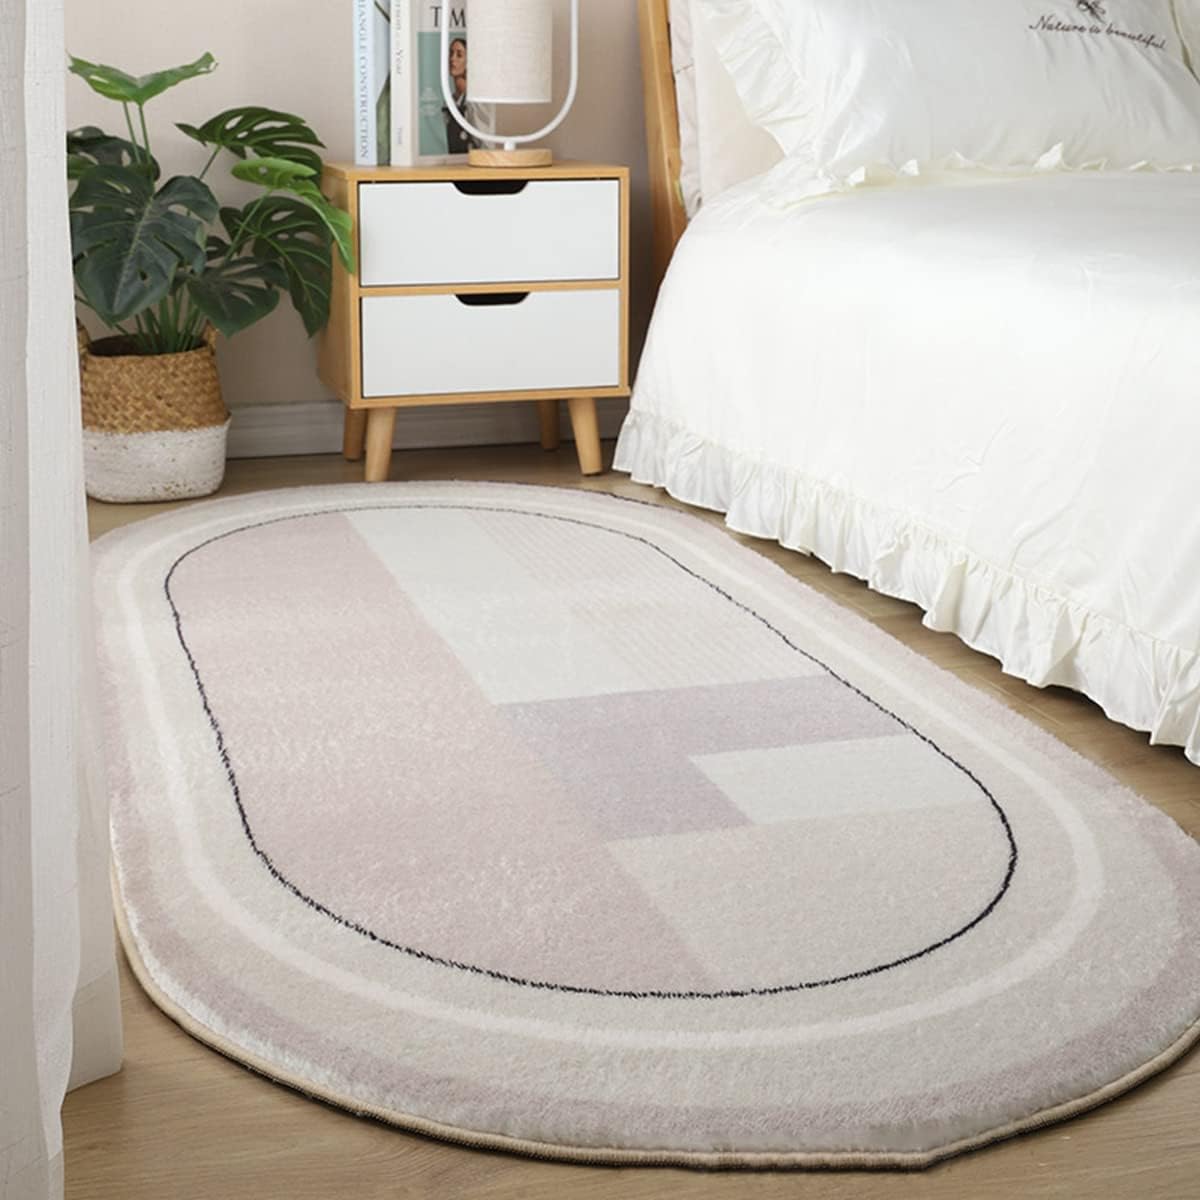 Tuokus」カーペット ラグ クラシック 絨毯 洗える ラグマット 楕円形 